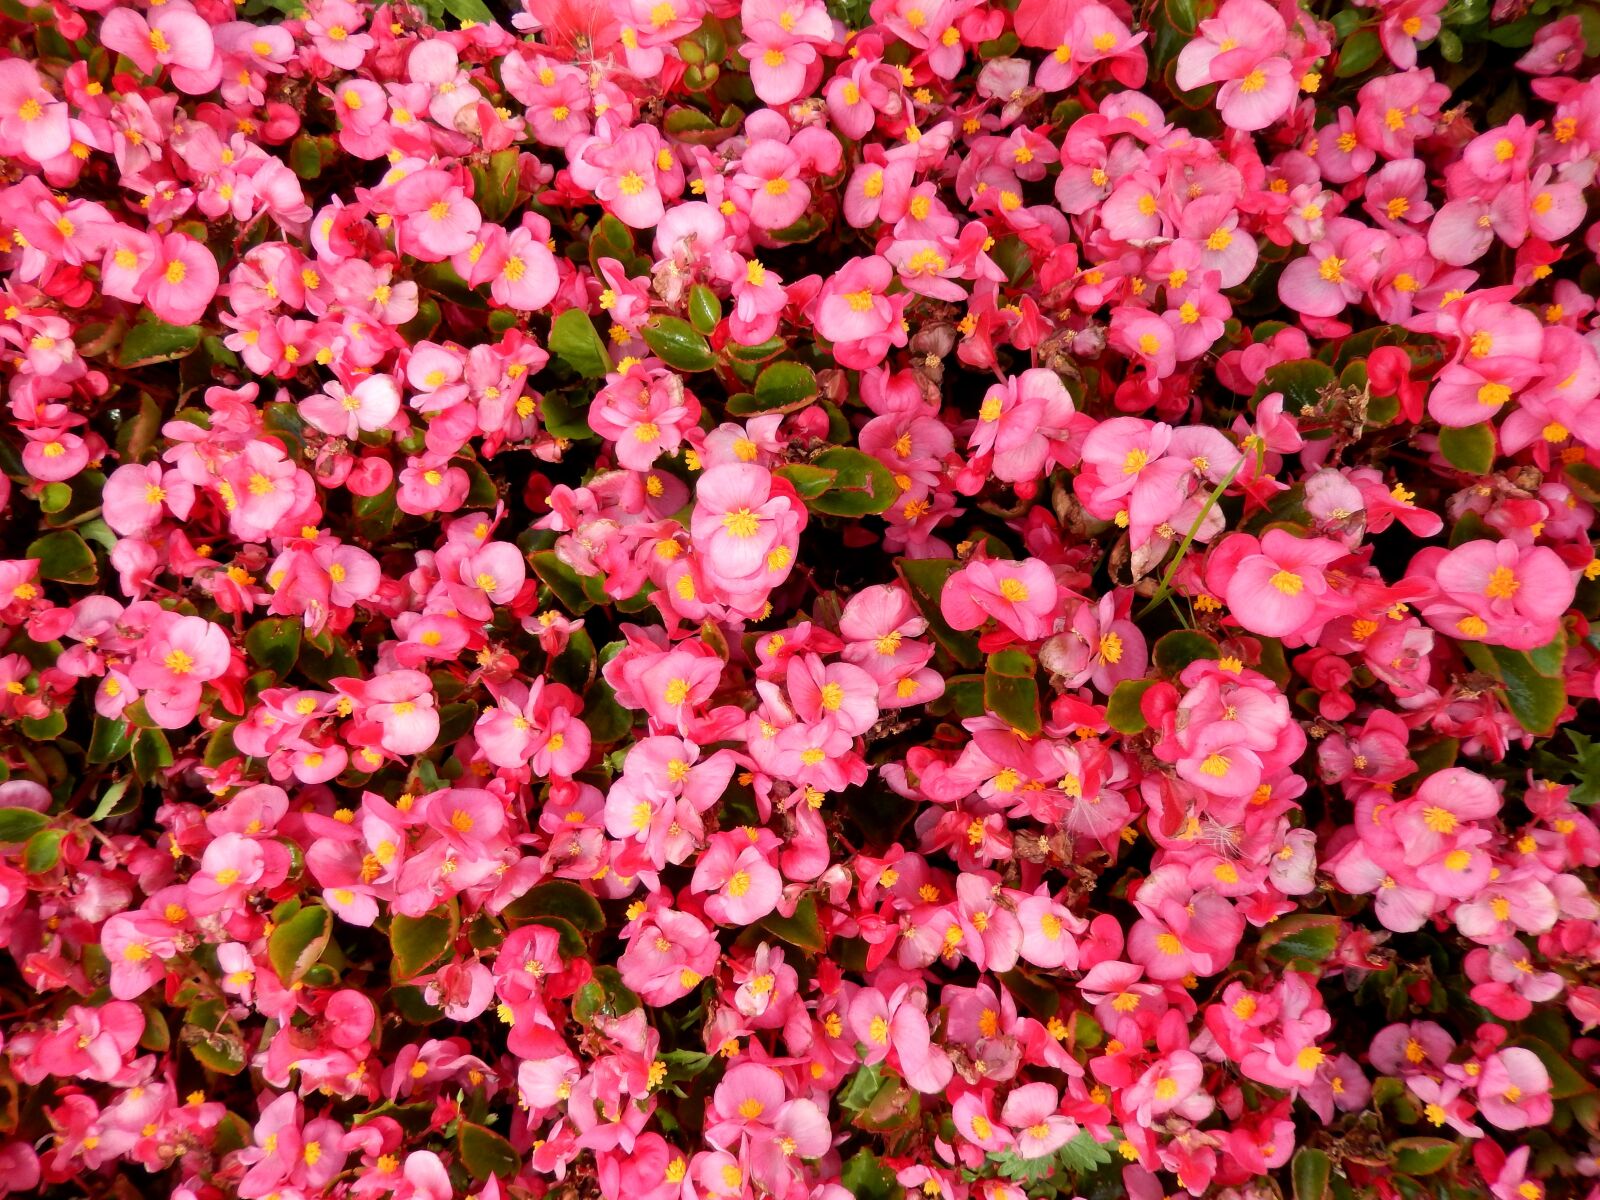 Nikon Coolpix S9500 sample photo. Flowers, carpet, flower carpet photography